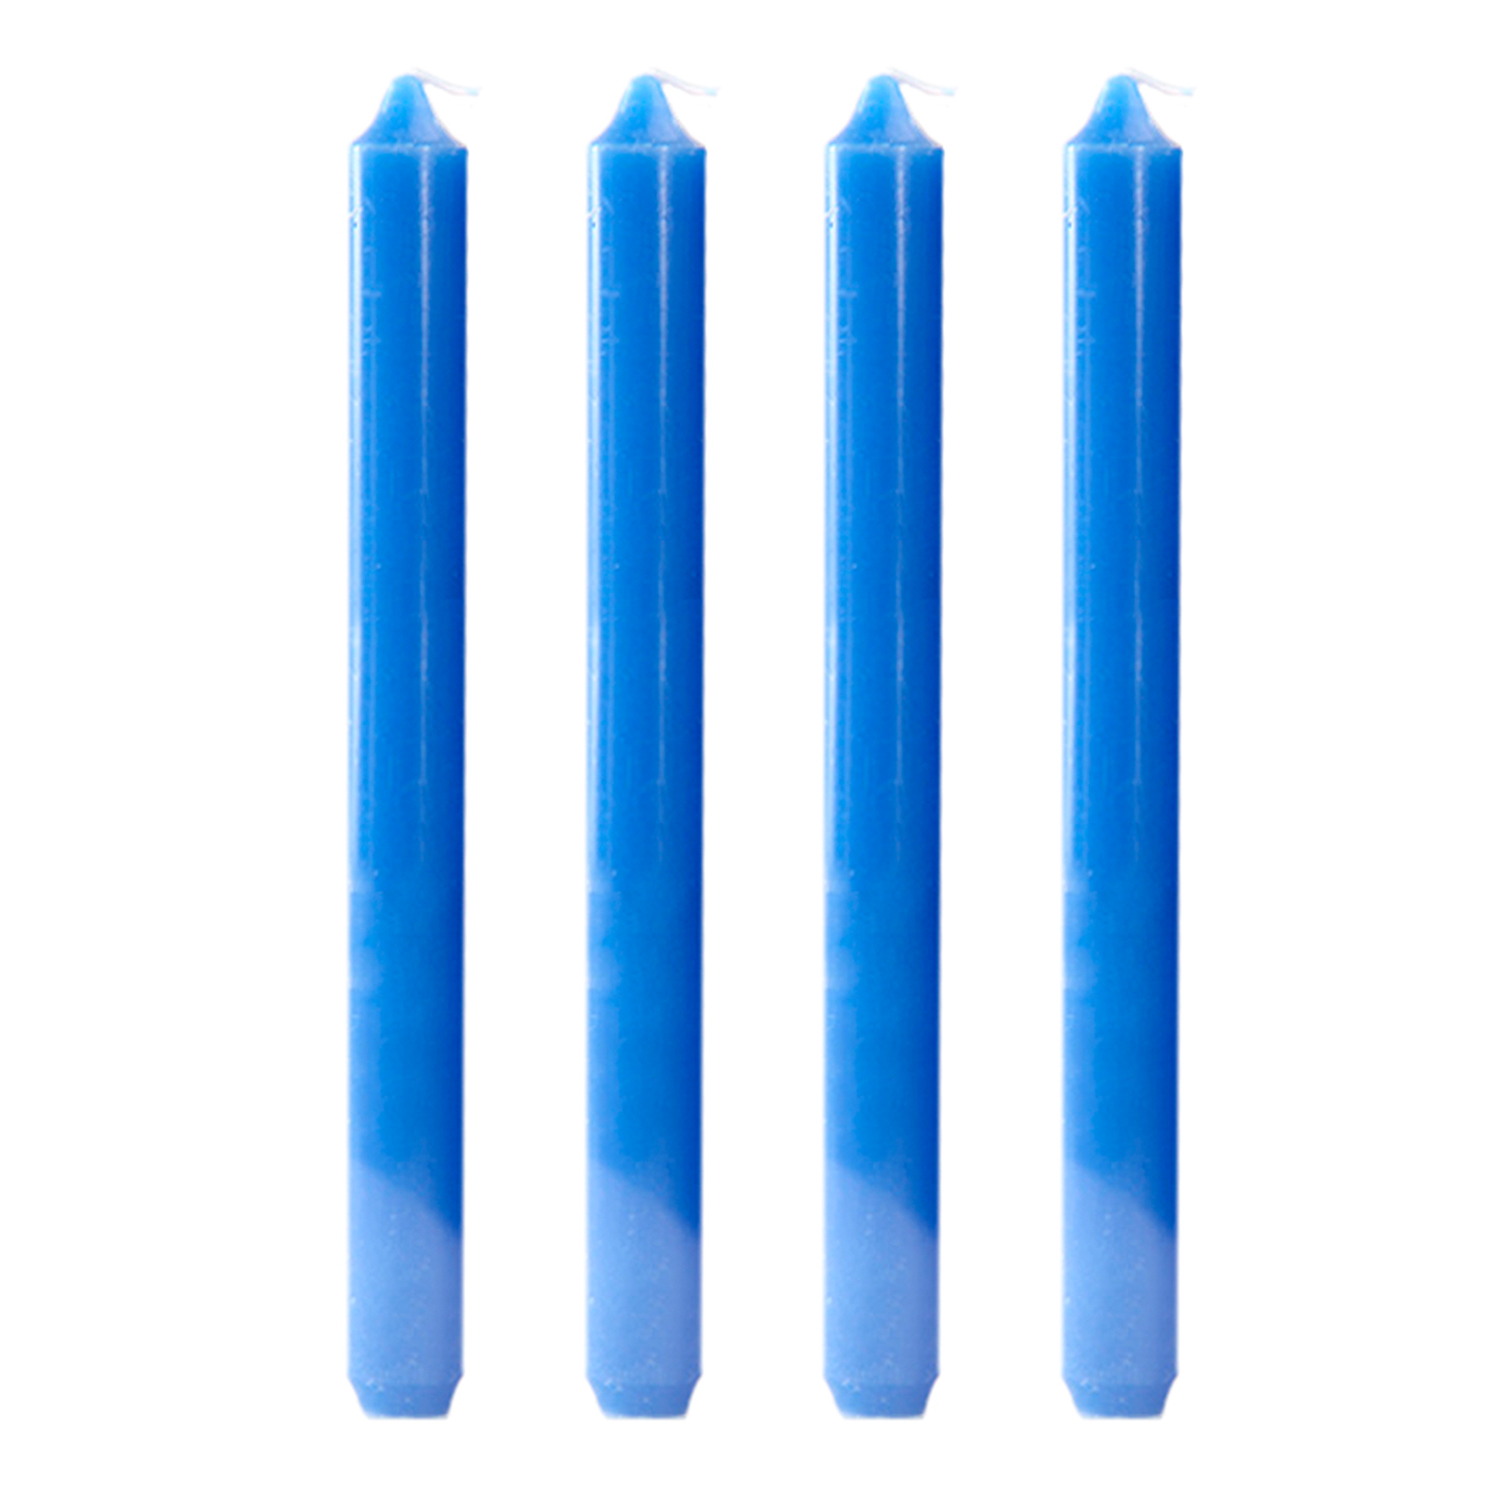 фото Набор свечей, 4 шт, голубой, 2,2х20 см, la casa nostra lcn-cndl-47